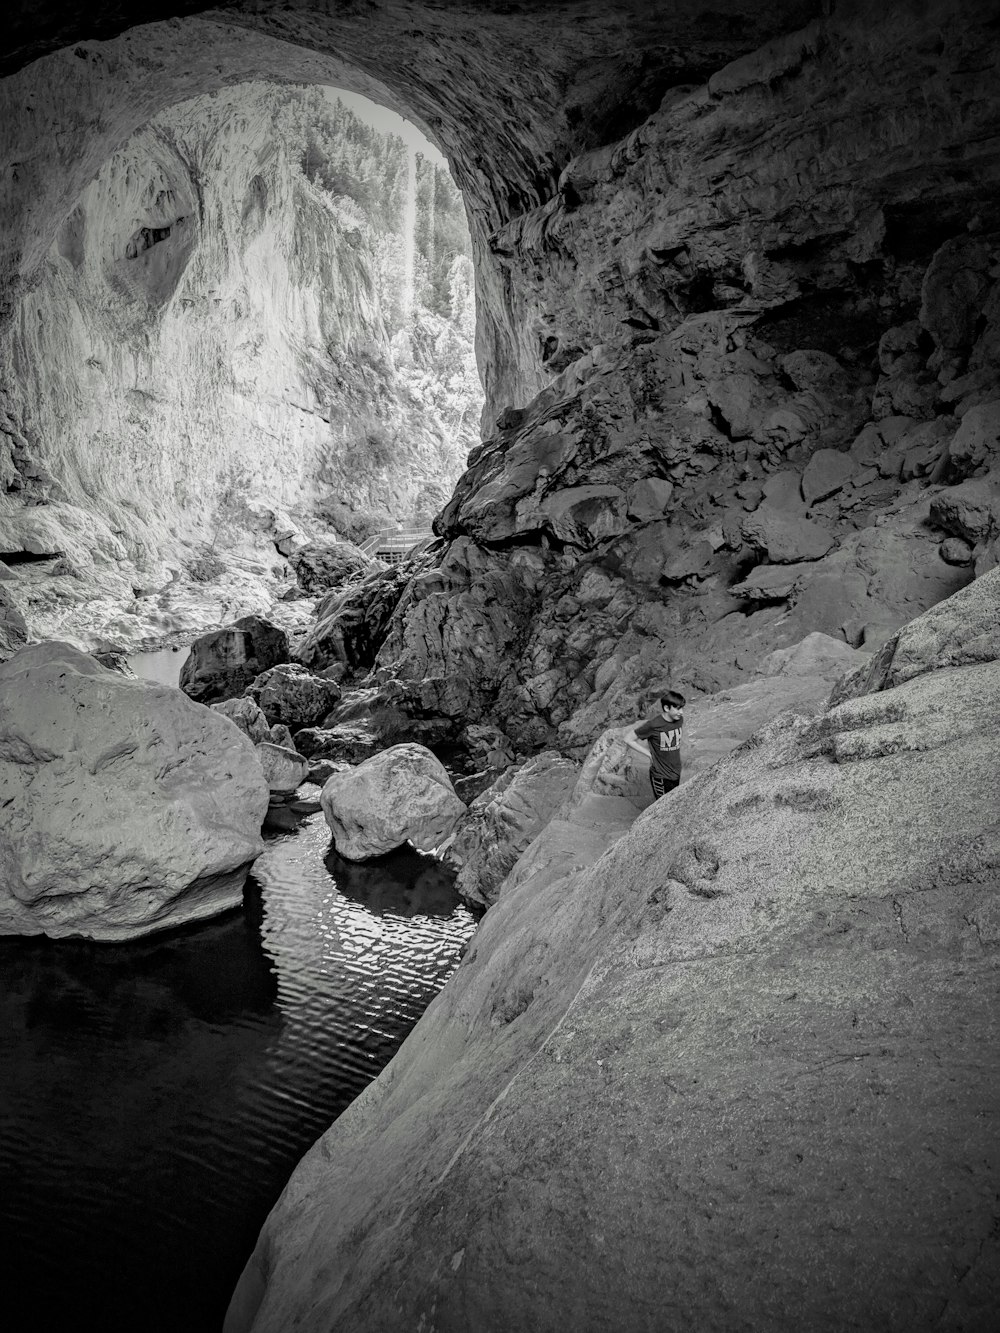 uma pessoa em pé em uma caverna